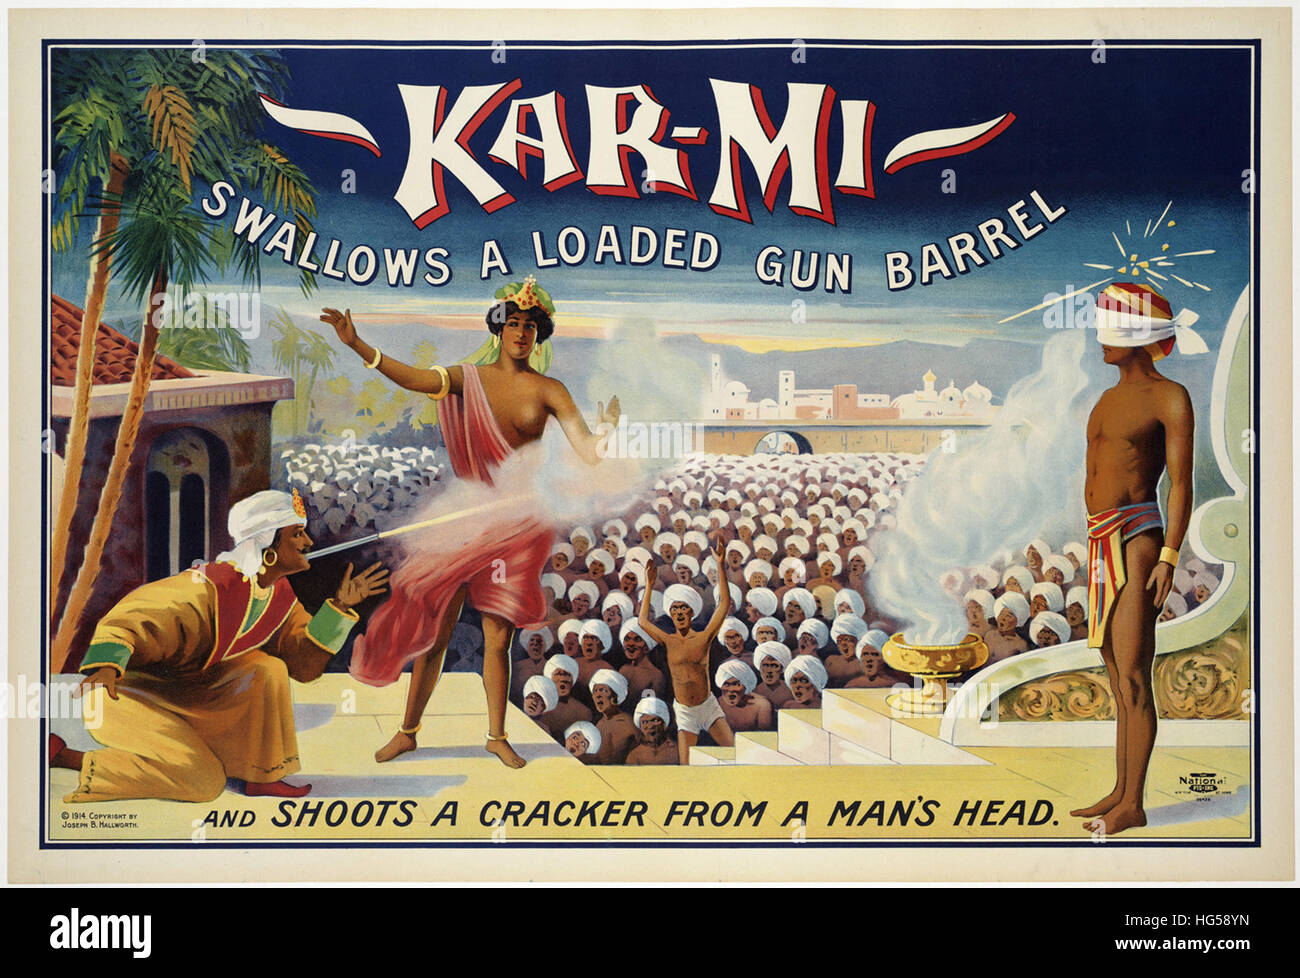 Circus Poster - Kar-mi traga una pistola cargada barril   y dispara un cracker desde la cabeza de un hombre. Foto de stock